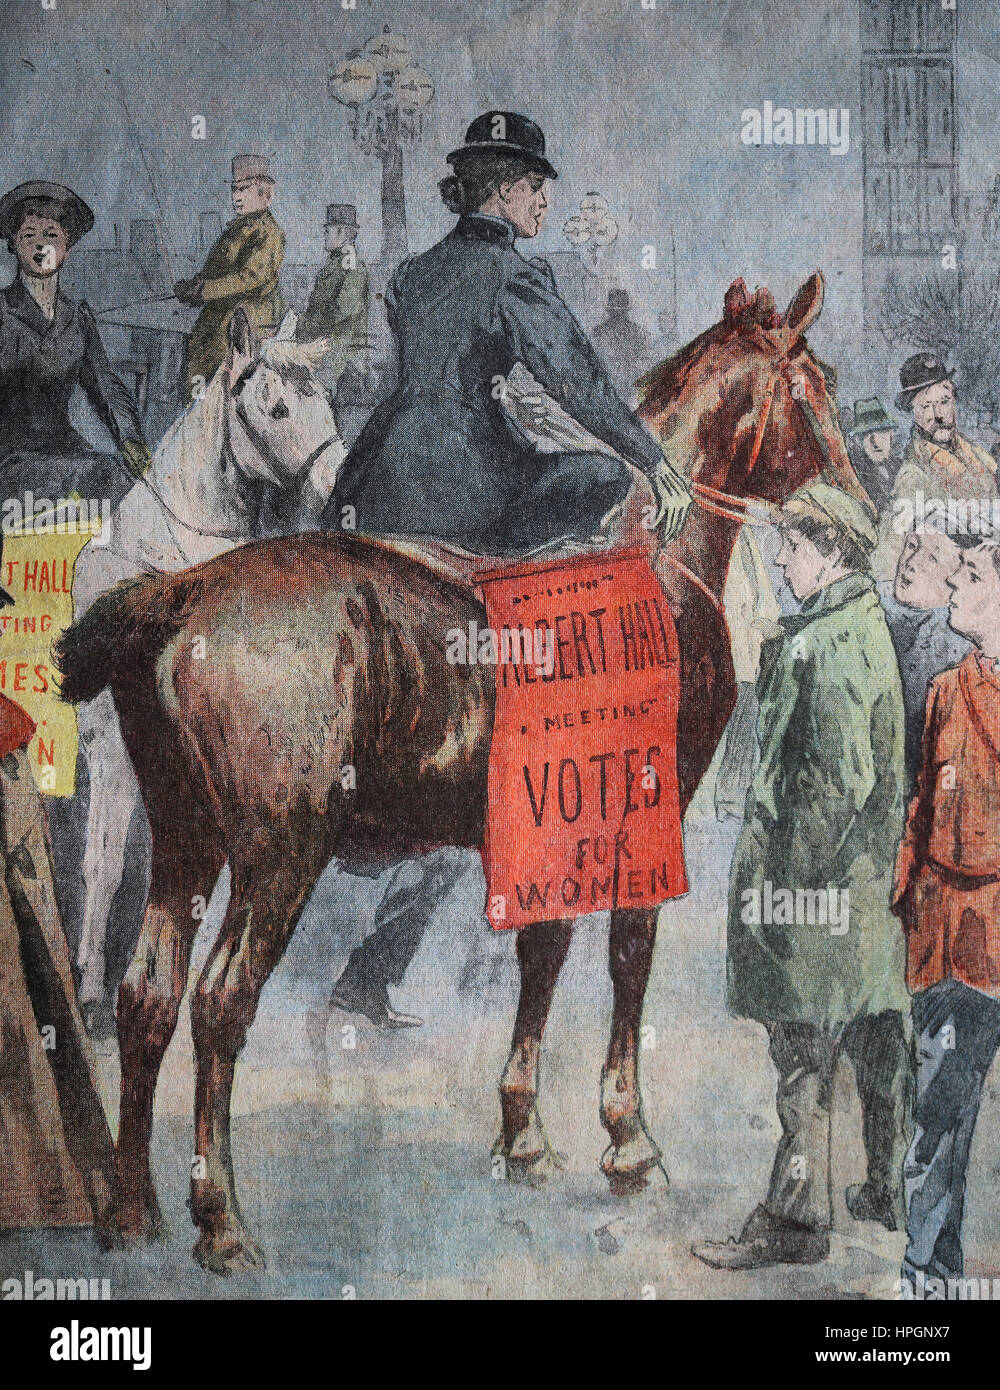 Suffragete Demonstration in London. Great Britain, 1905. Le Petit Parisien. Supplement Litteraire Illustre. 15 novenber, 1905. Stock Photo